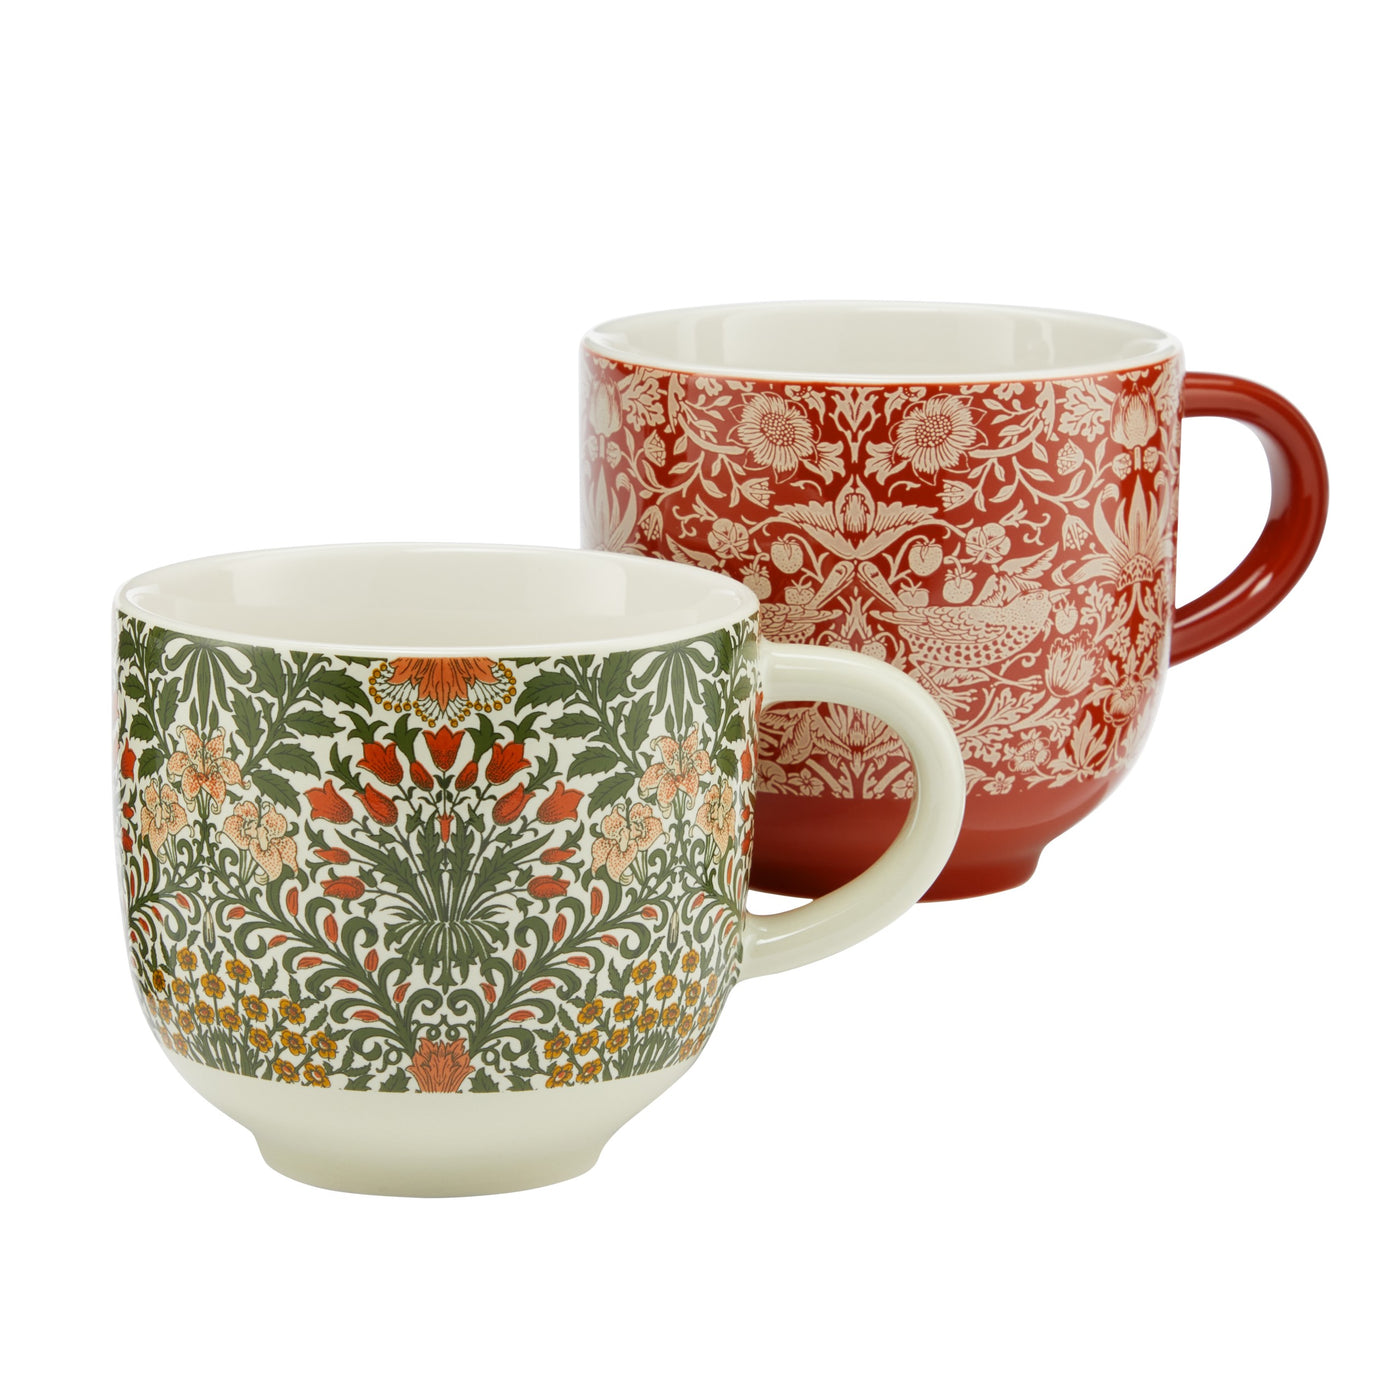 Useful & Beautiful Two Assorted Fine China Mugs